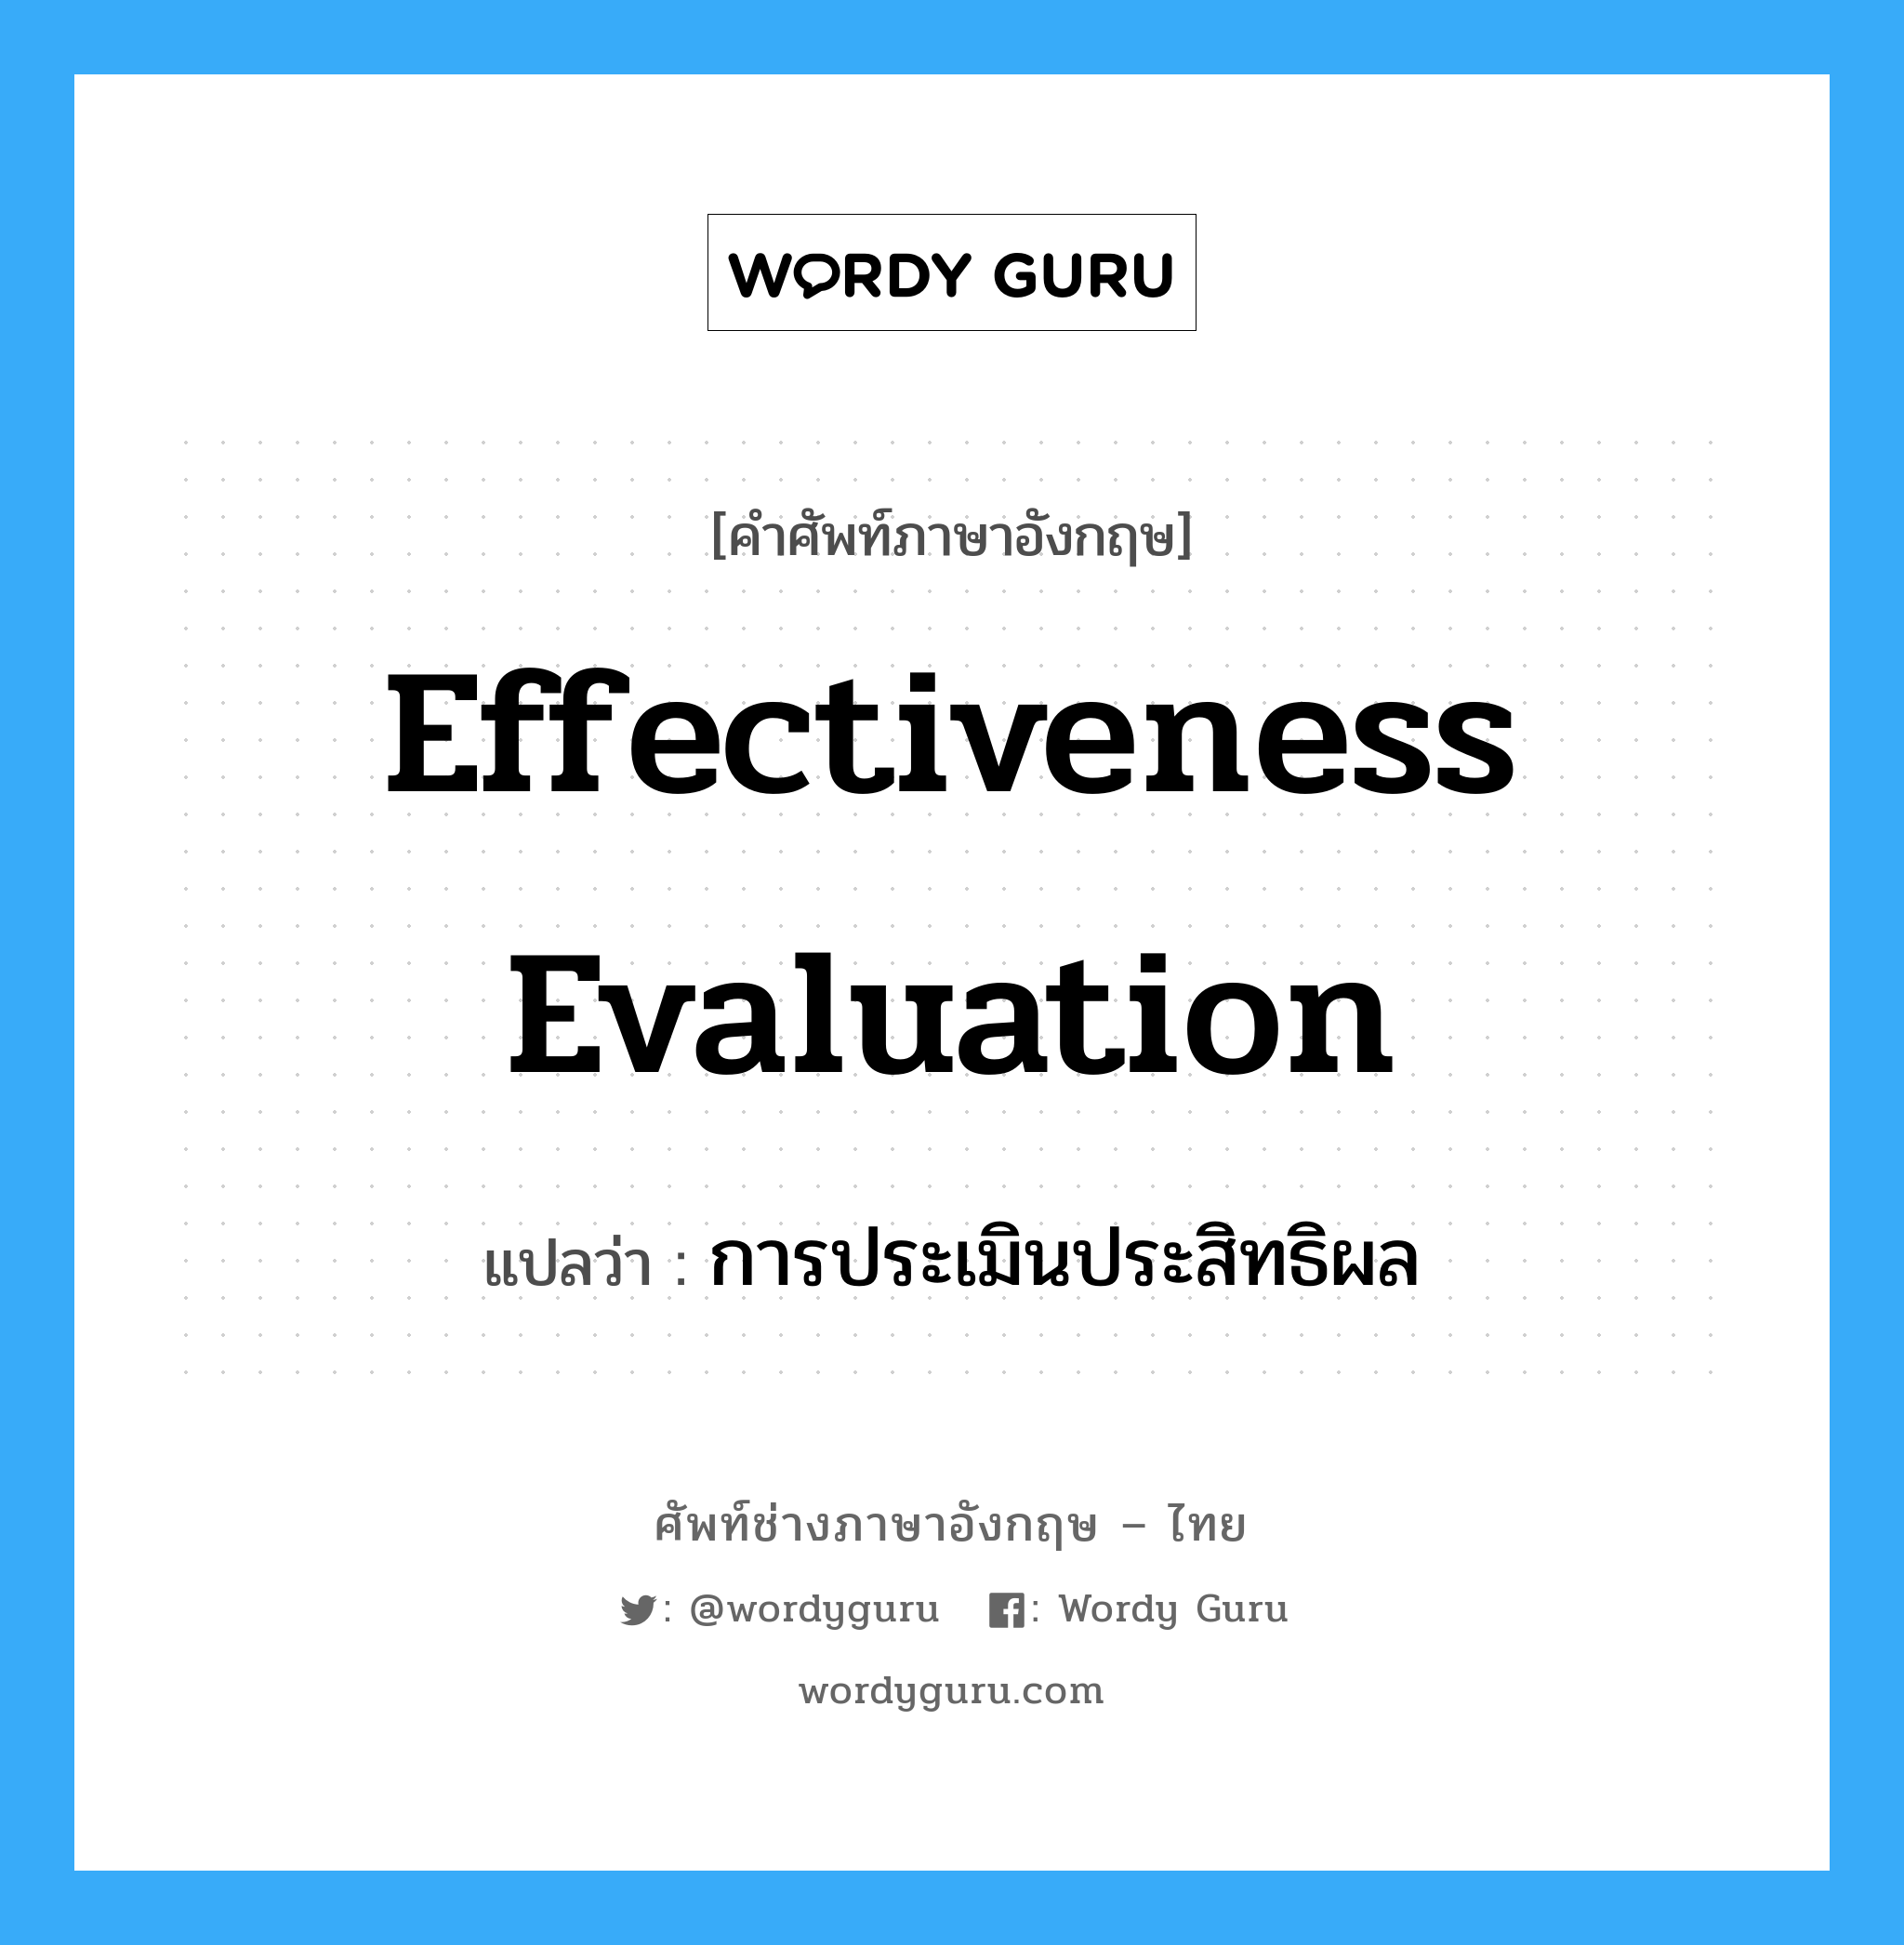 การประเมินประสิทธิผล ภาษาอังกฤษ?, คำศัพท์ช่างภาษาอังกฤษ - ไทย การประเมินประสิทธิผล คำศัพท์ภาษาอังกฤษ การประเมินประสิทธิผล แปลว่า Effectiveness Evaluation